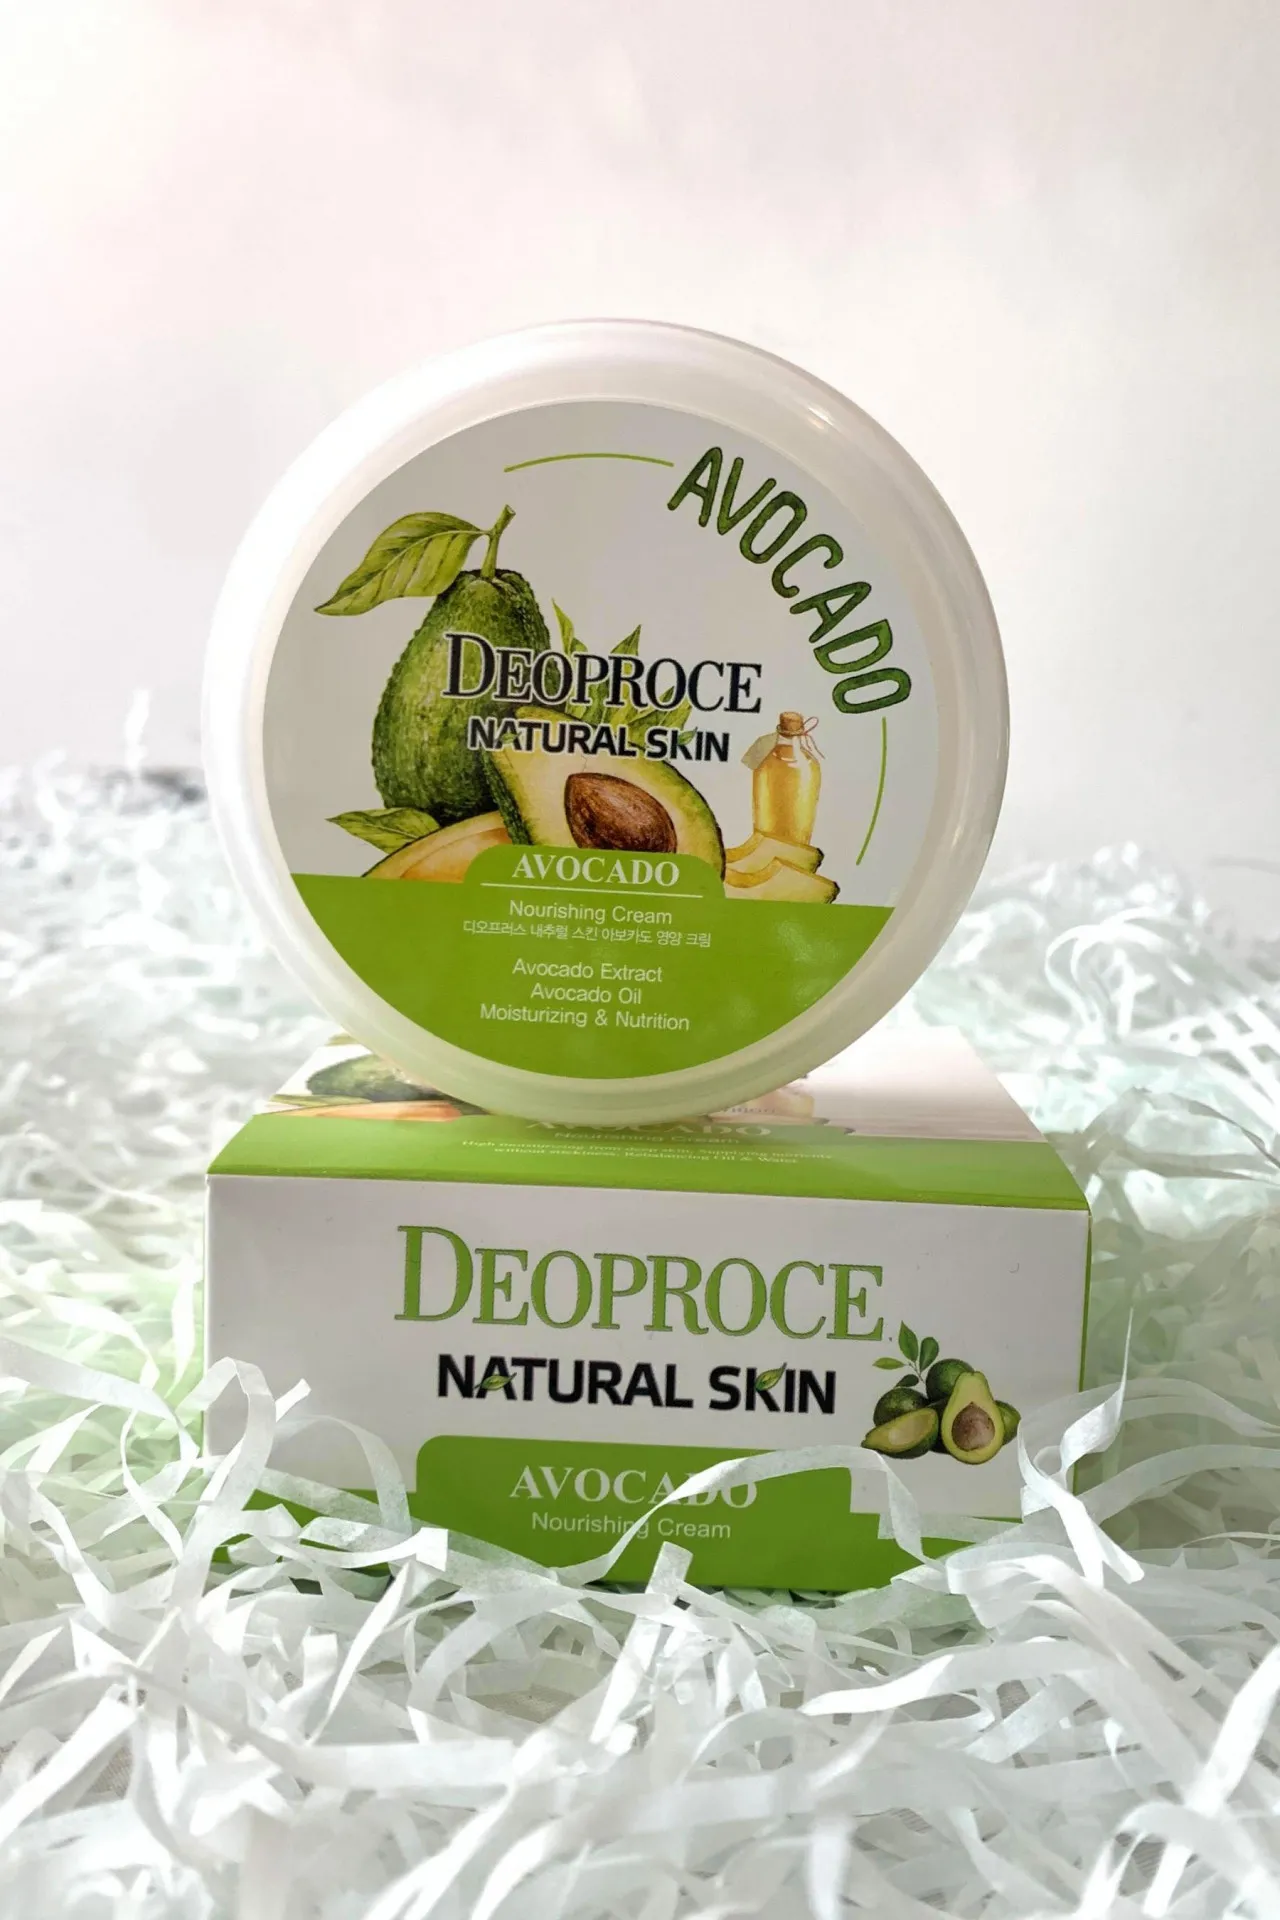 Крем для лица и тела питательный крем с авокадо natural skin avocado nourshing gream 5531 Deoproce (Корея)#1